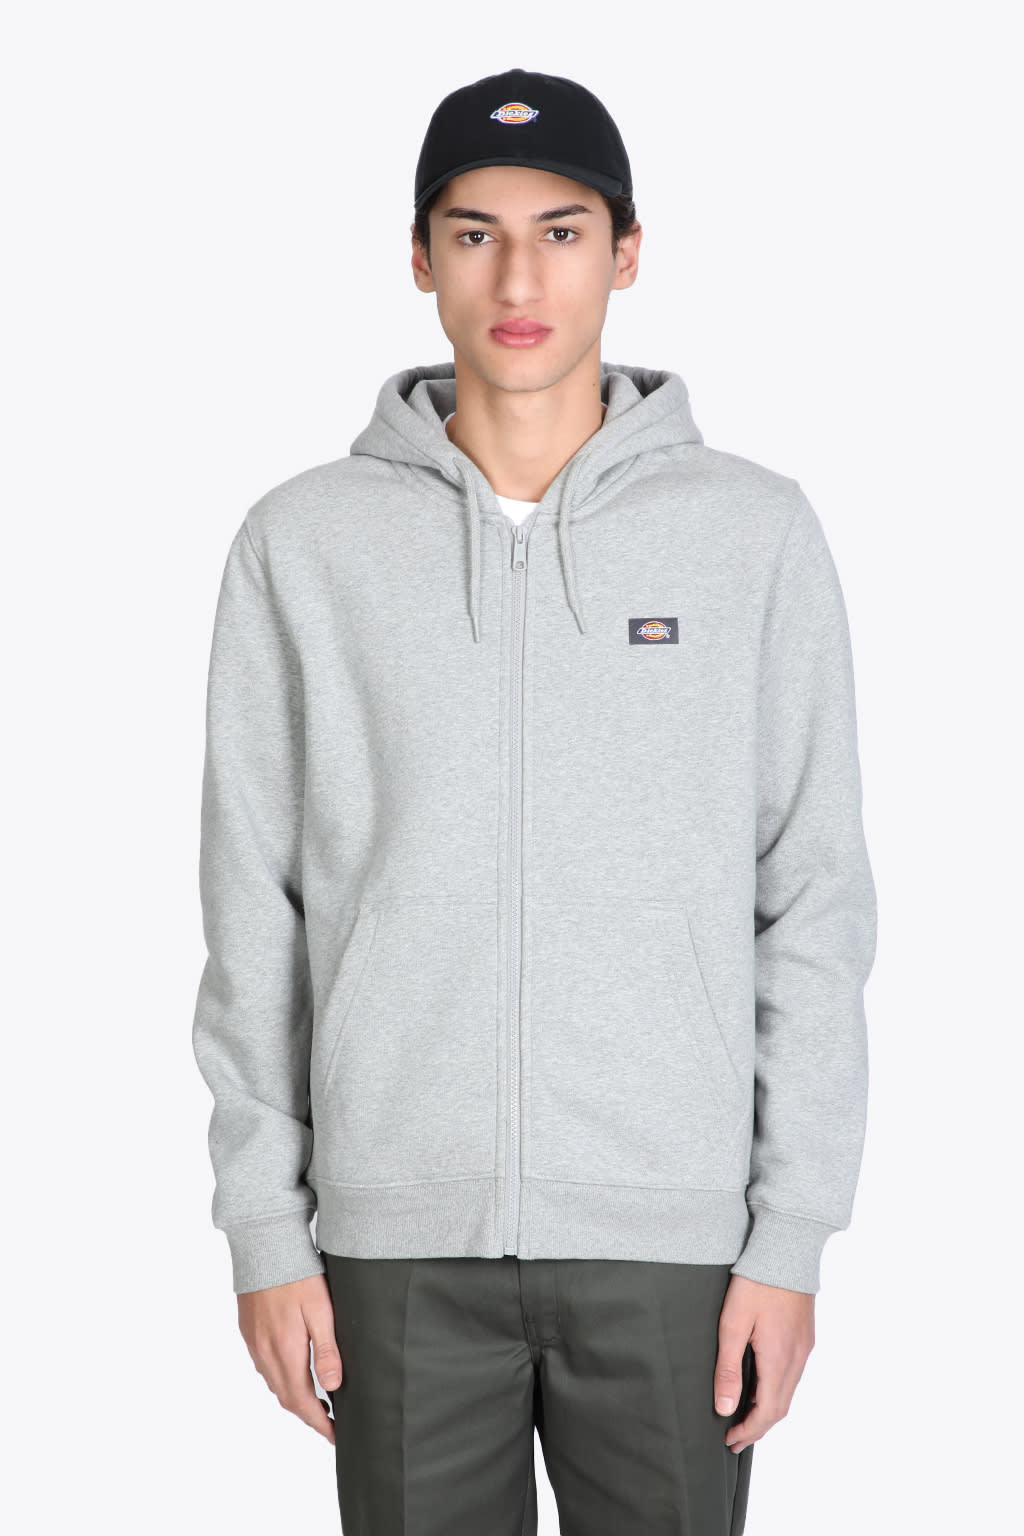 Dickies Oakport Zip Hoodie Grey cotton hoodie with zip - Oakport zip hoodie